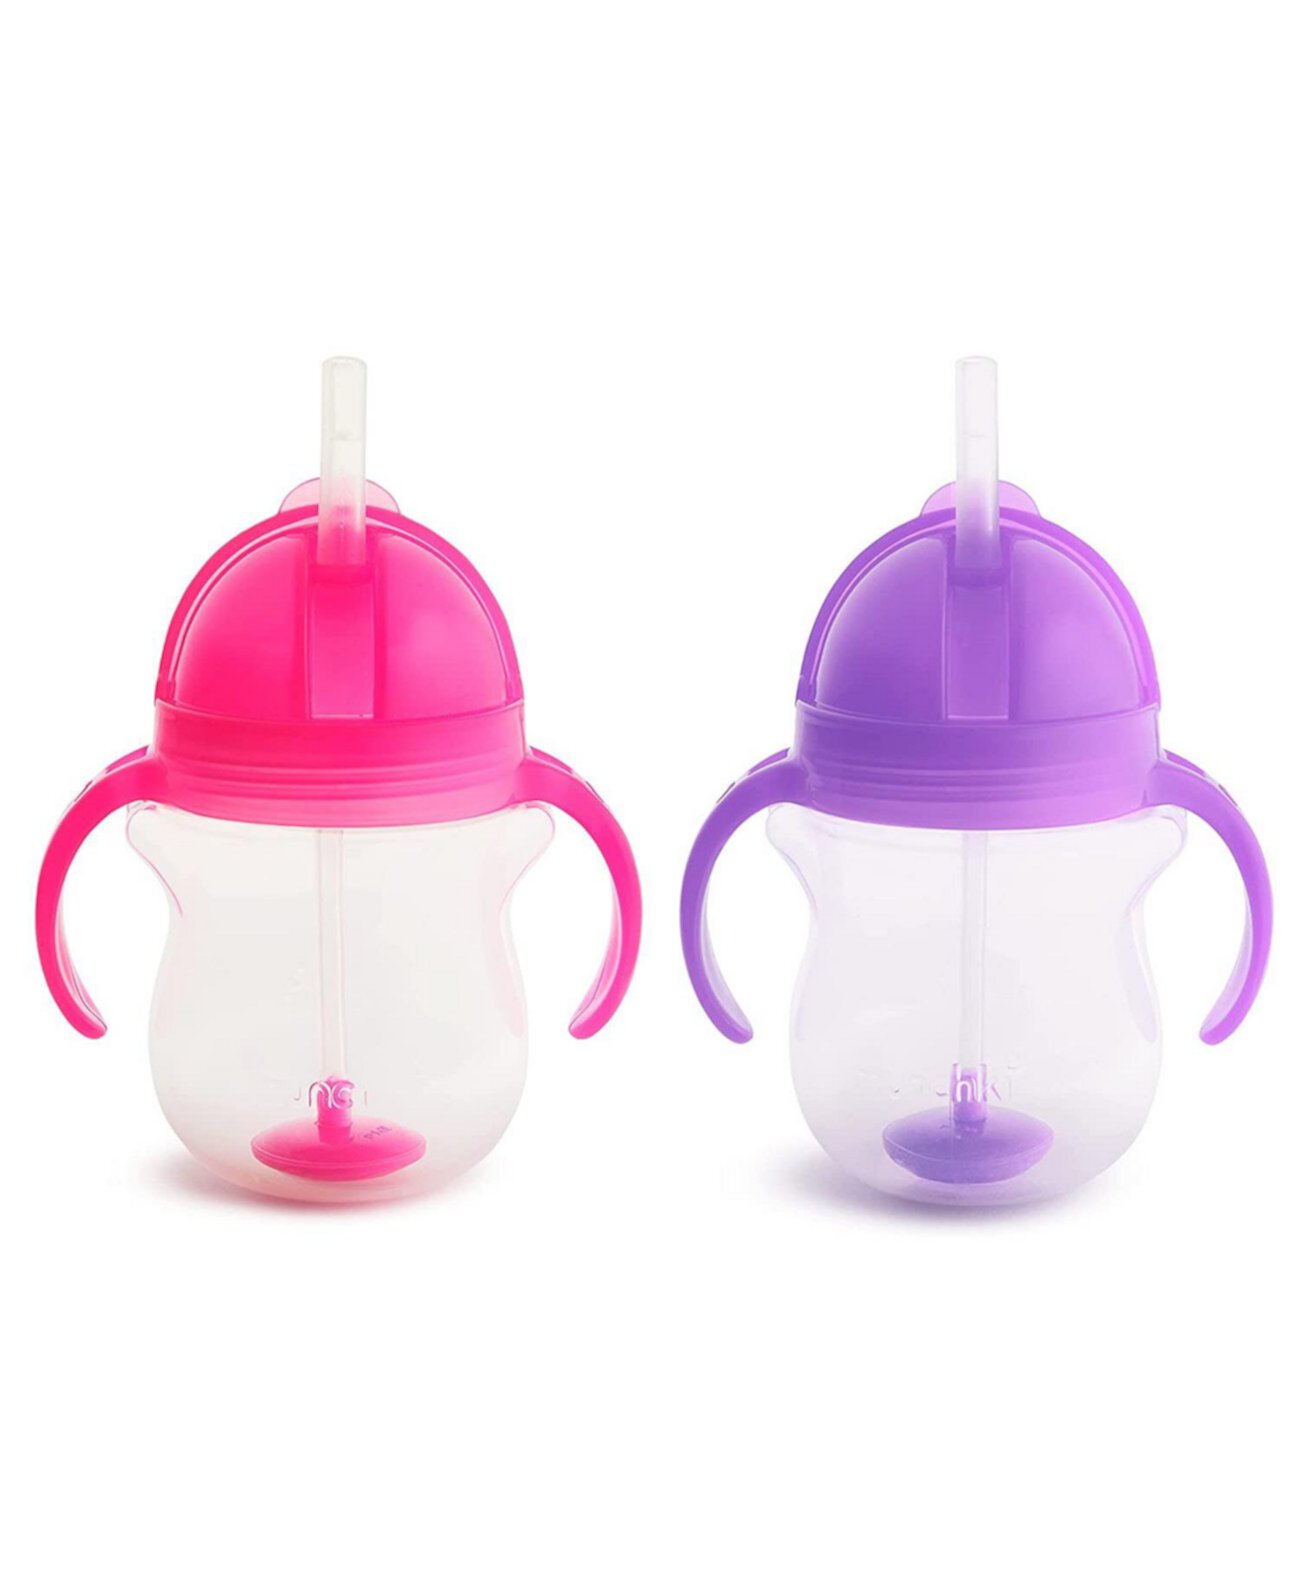 Утяжеленная соломенная чашка Click Lock, 7 унций, розовый/фиолетовый, 2 шт. в упаковке Munchkin